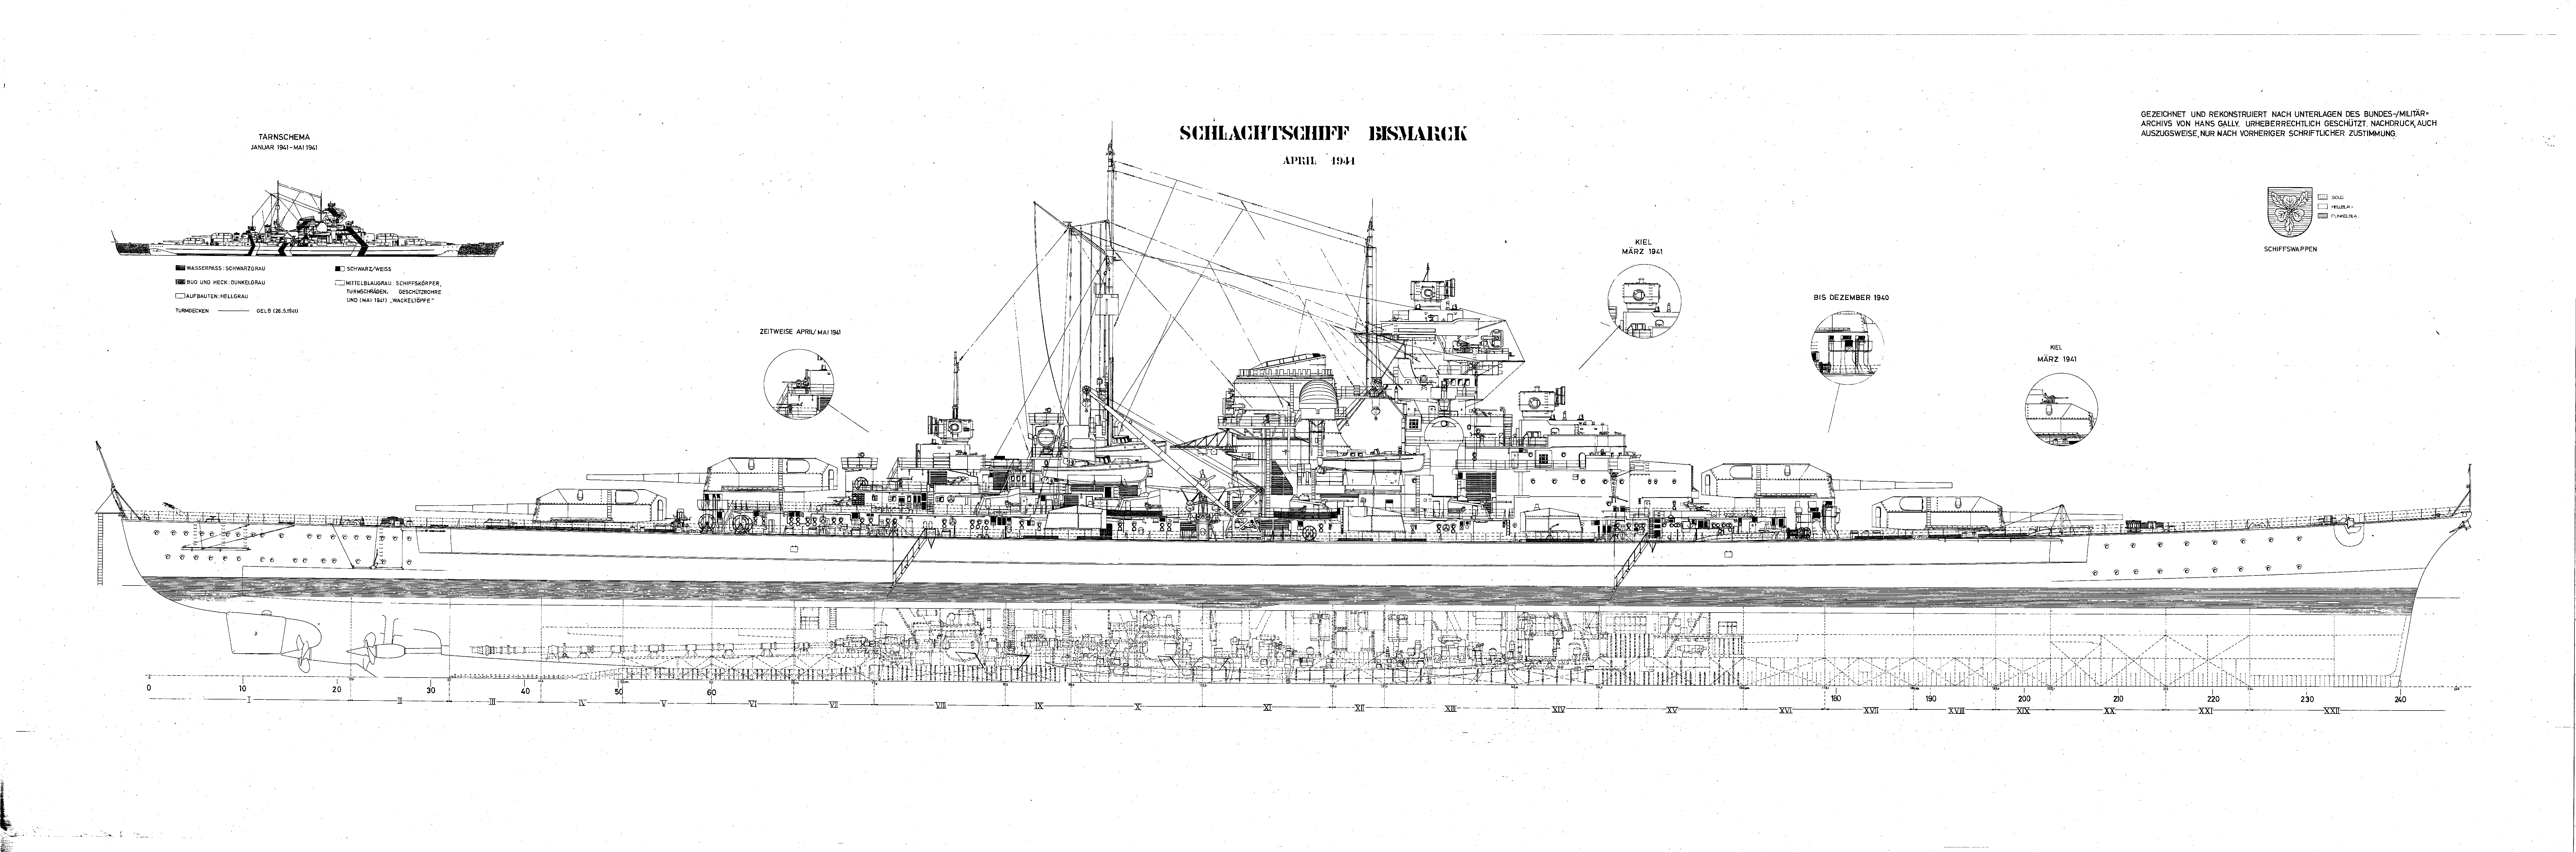 The German Battleship Bismark schematics.